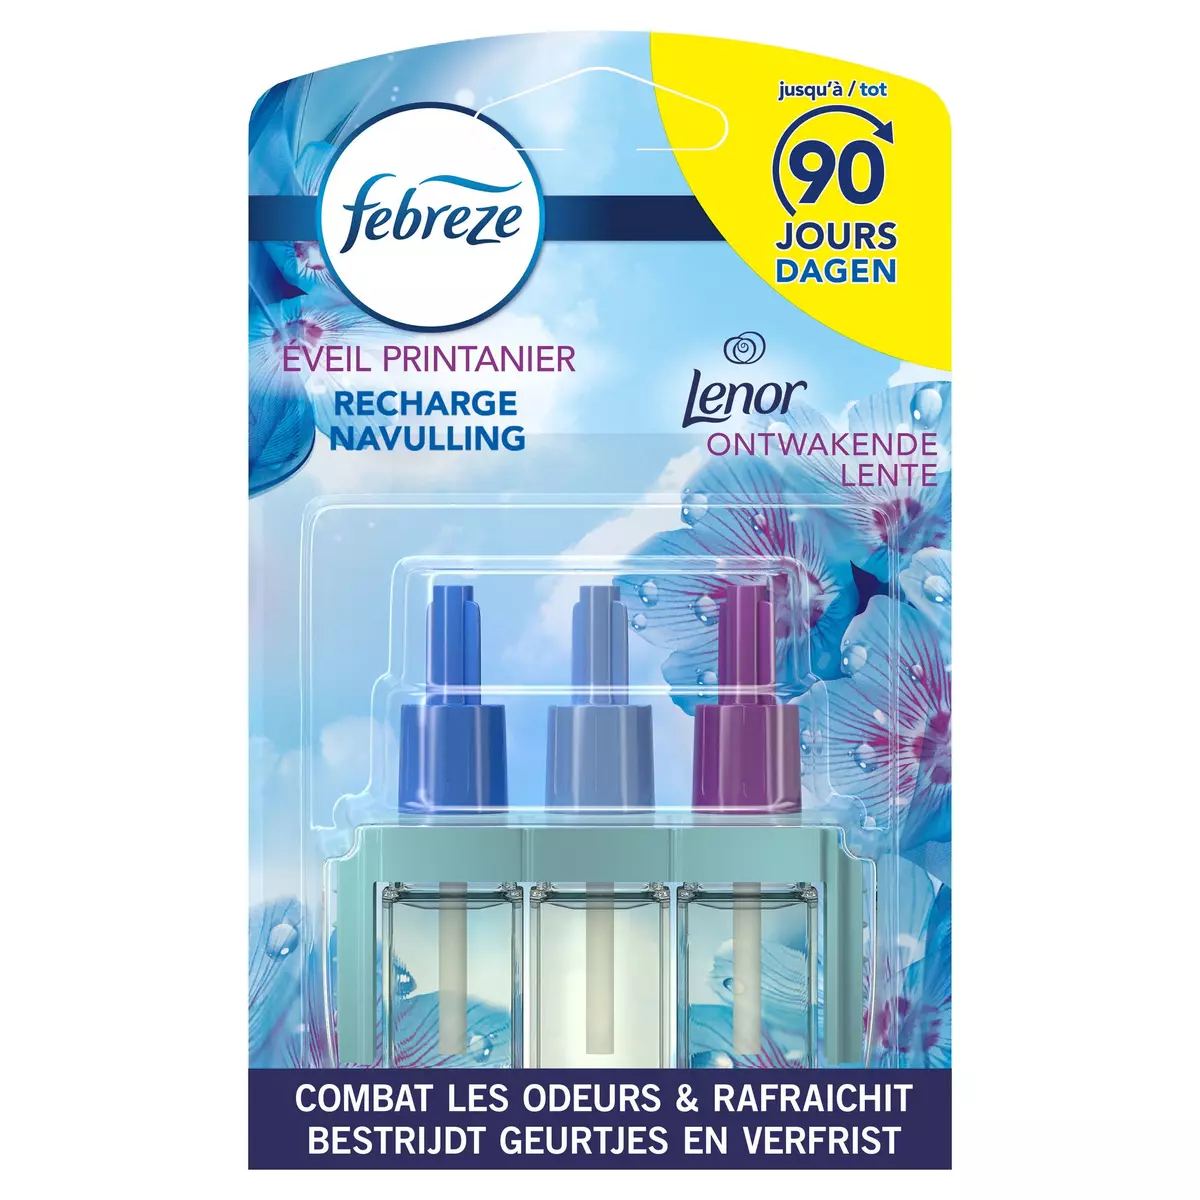 Désodorisant diffuseur électrique 3Volution Smart parfum Orchidée, Febreze  (20 ml)